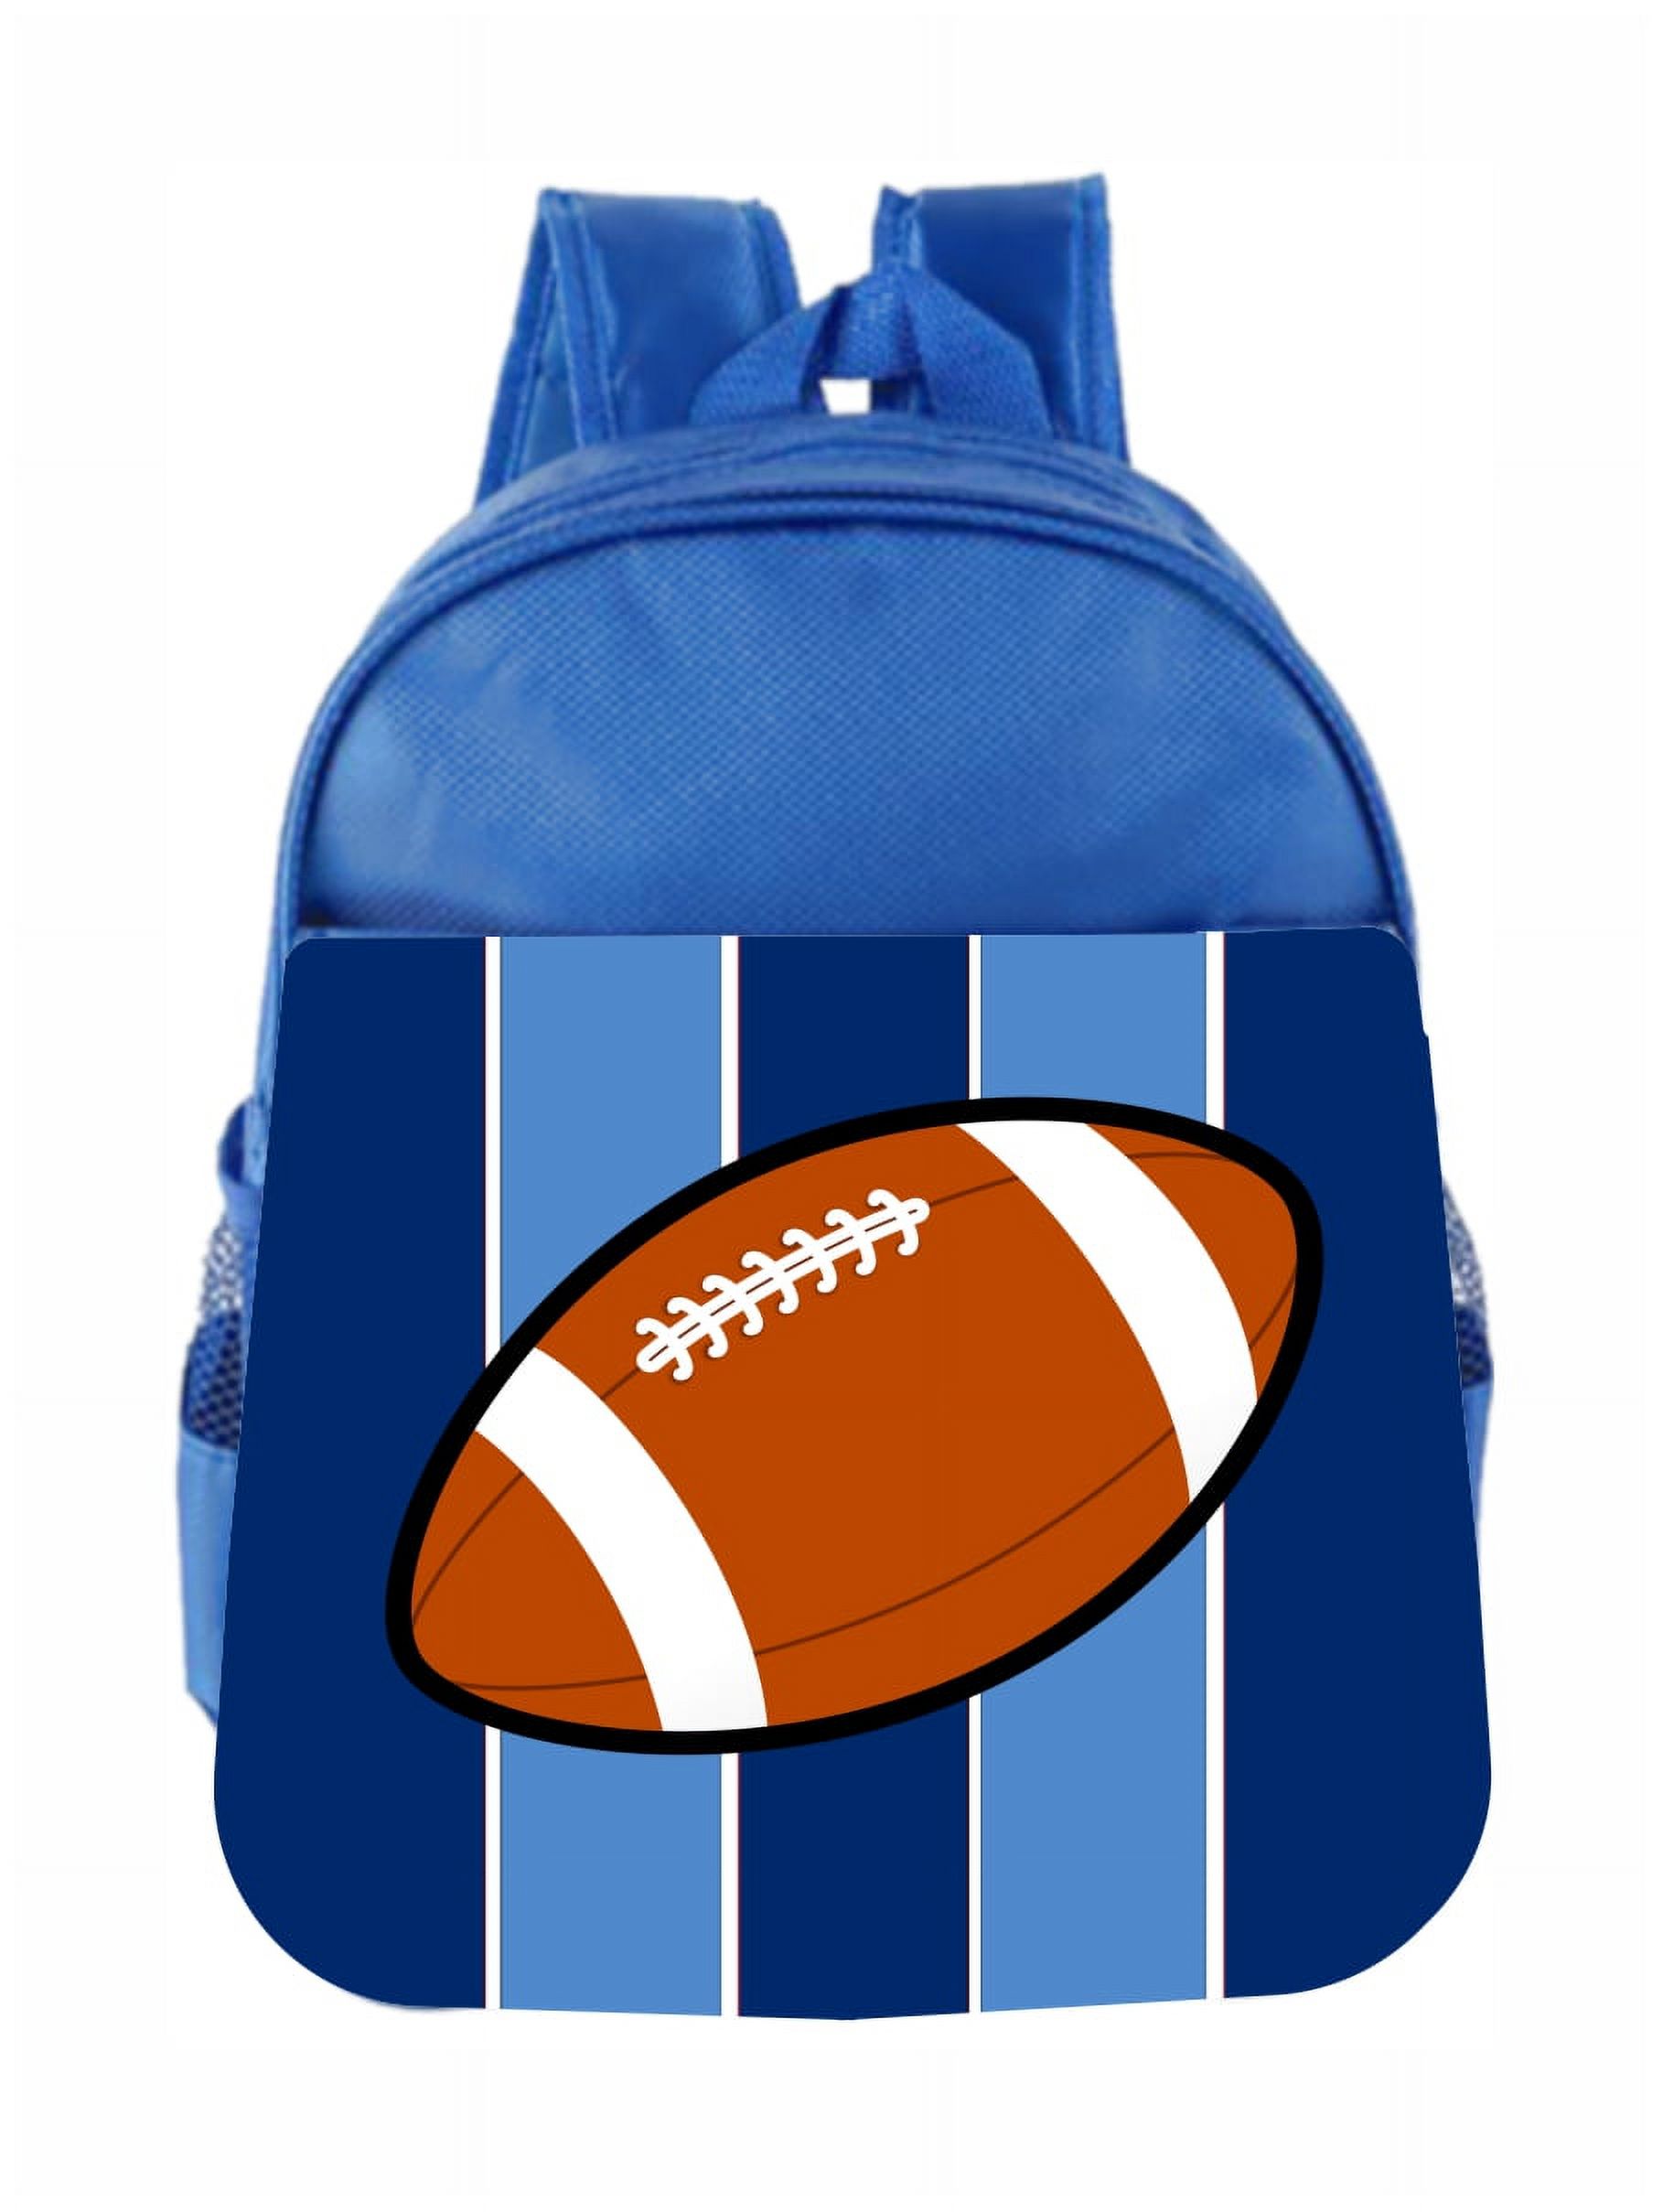 Toddler Backpack Sports Football Blue Stripes Kids Backpack Toddler - image 1 of 4